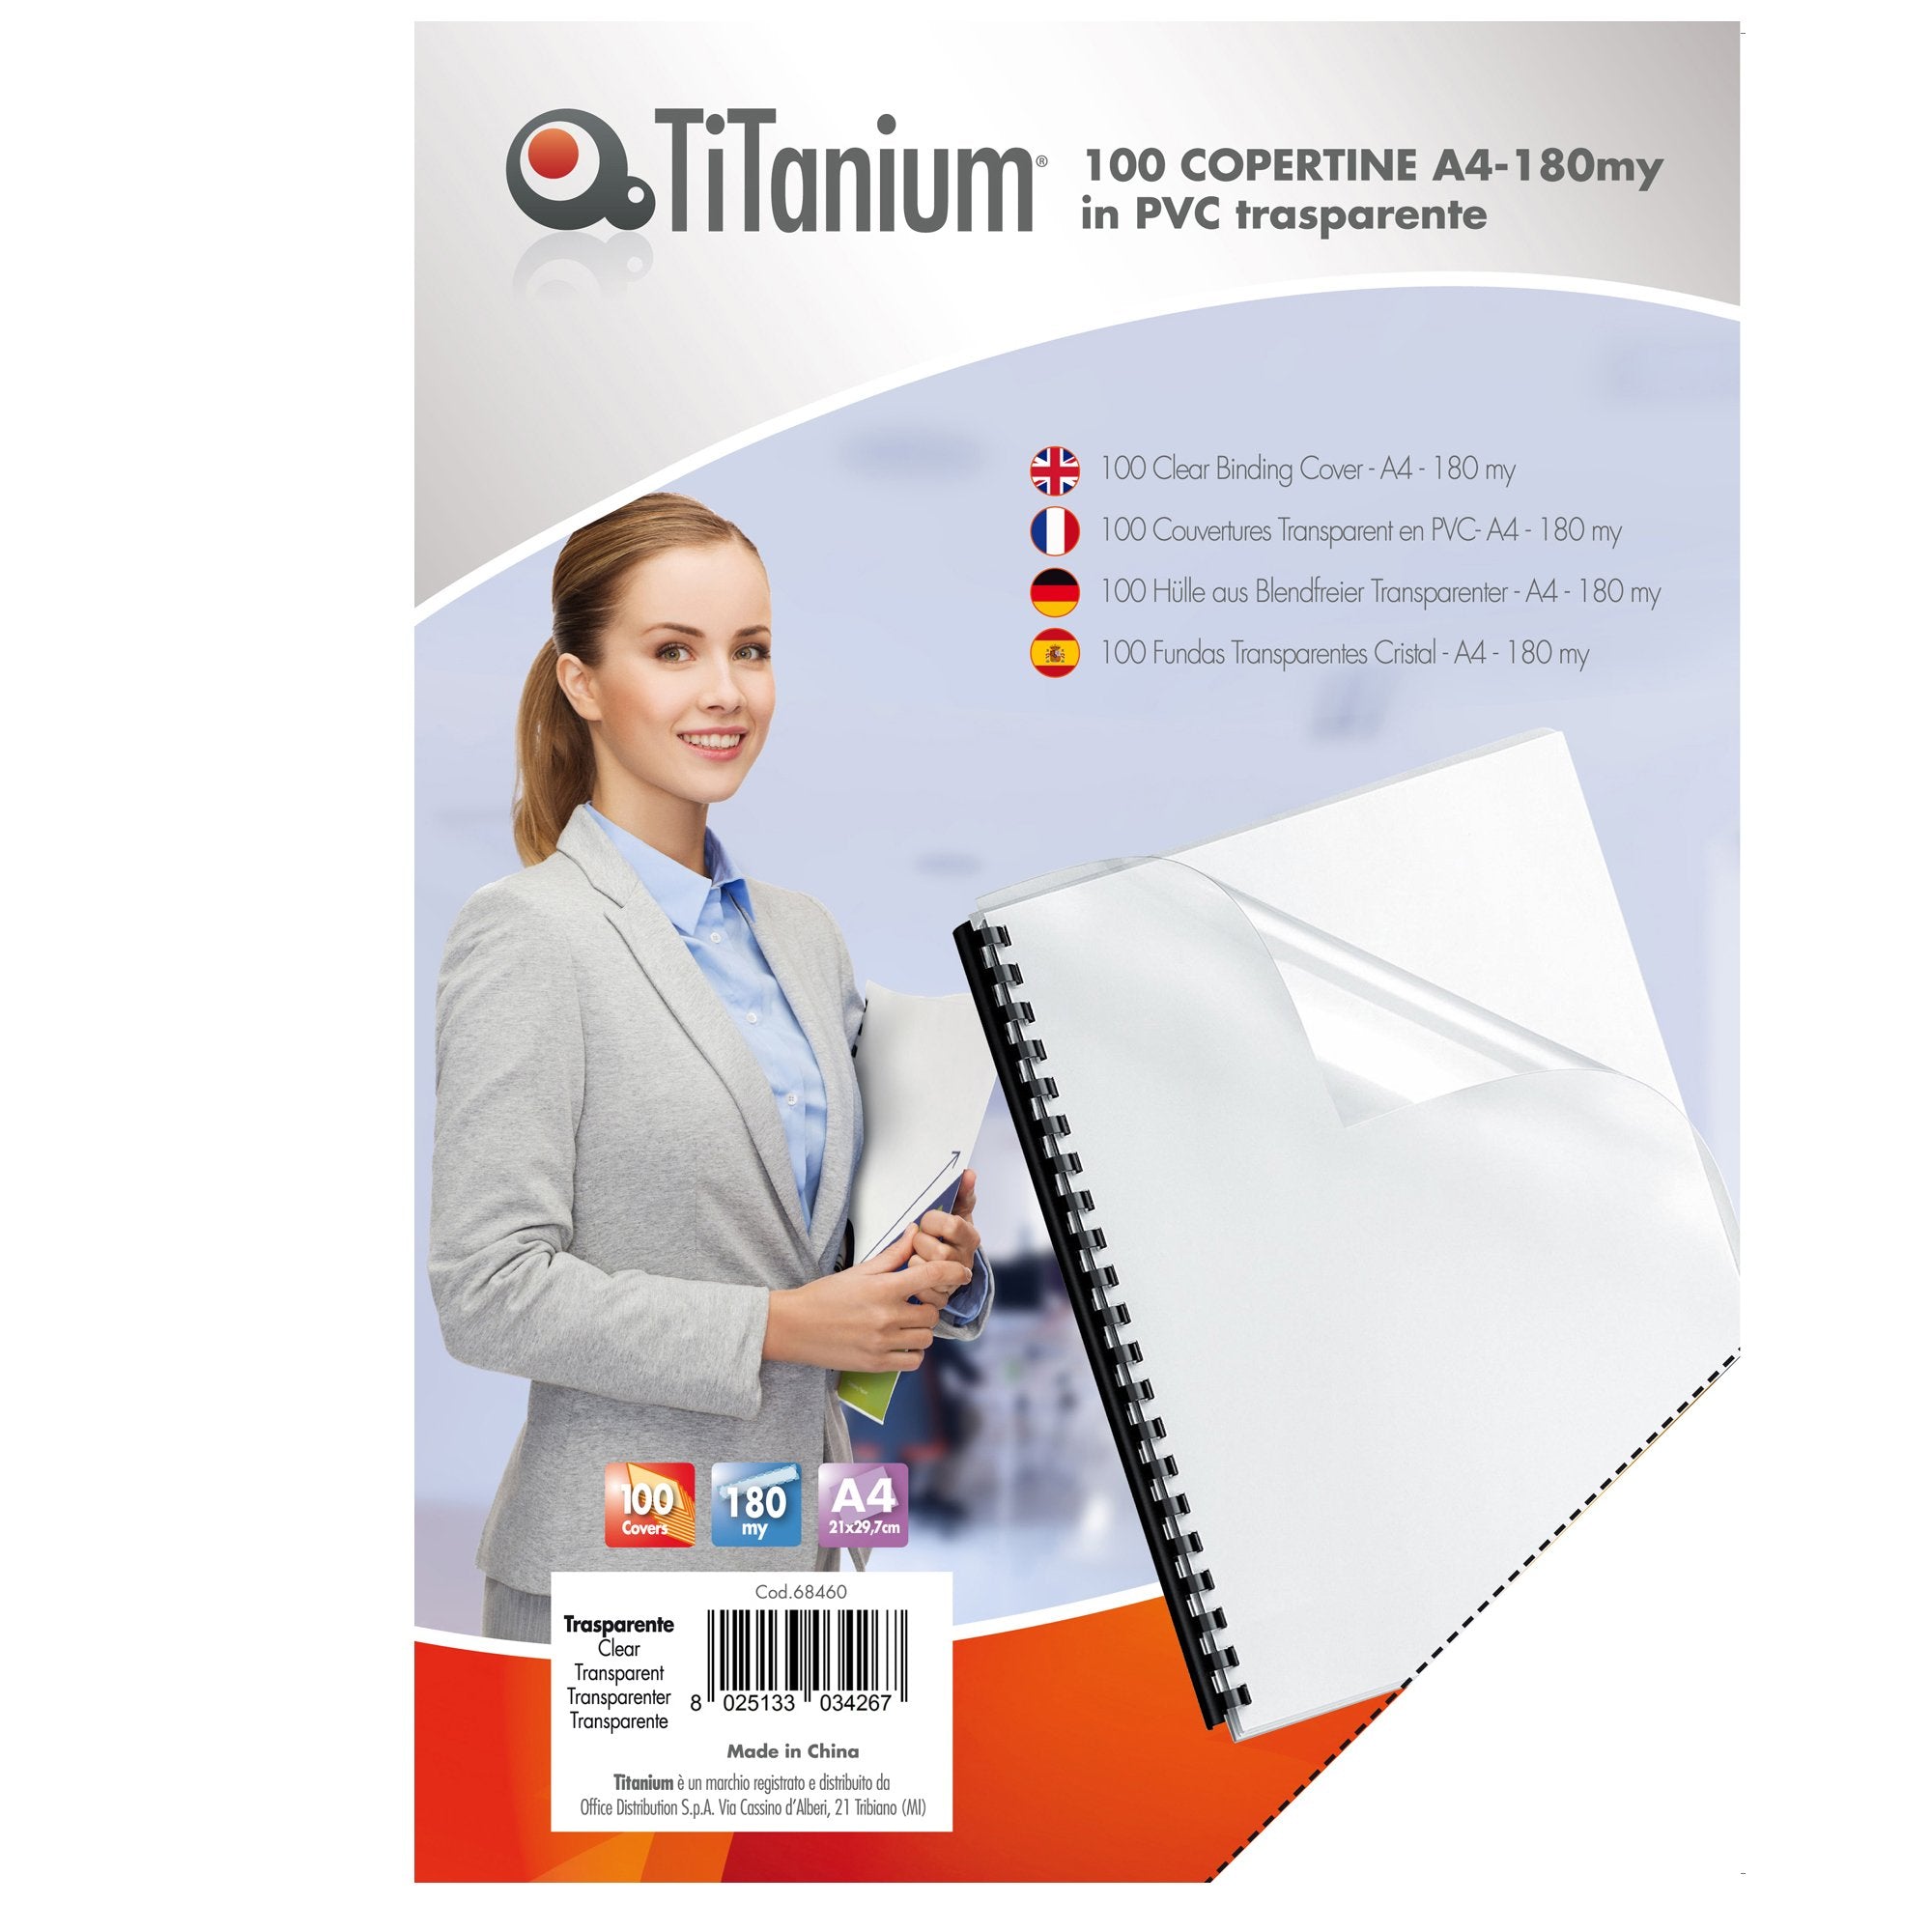 titanium-100-copertine-a4-pvc-trasparente-180my